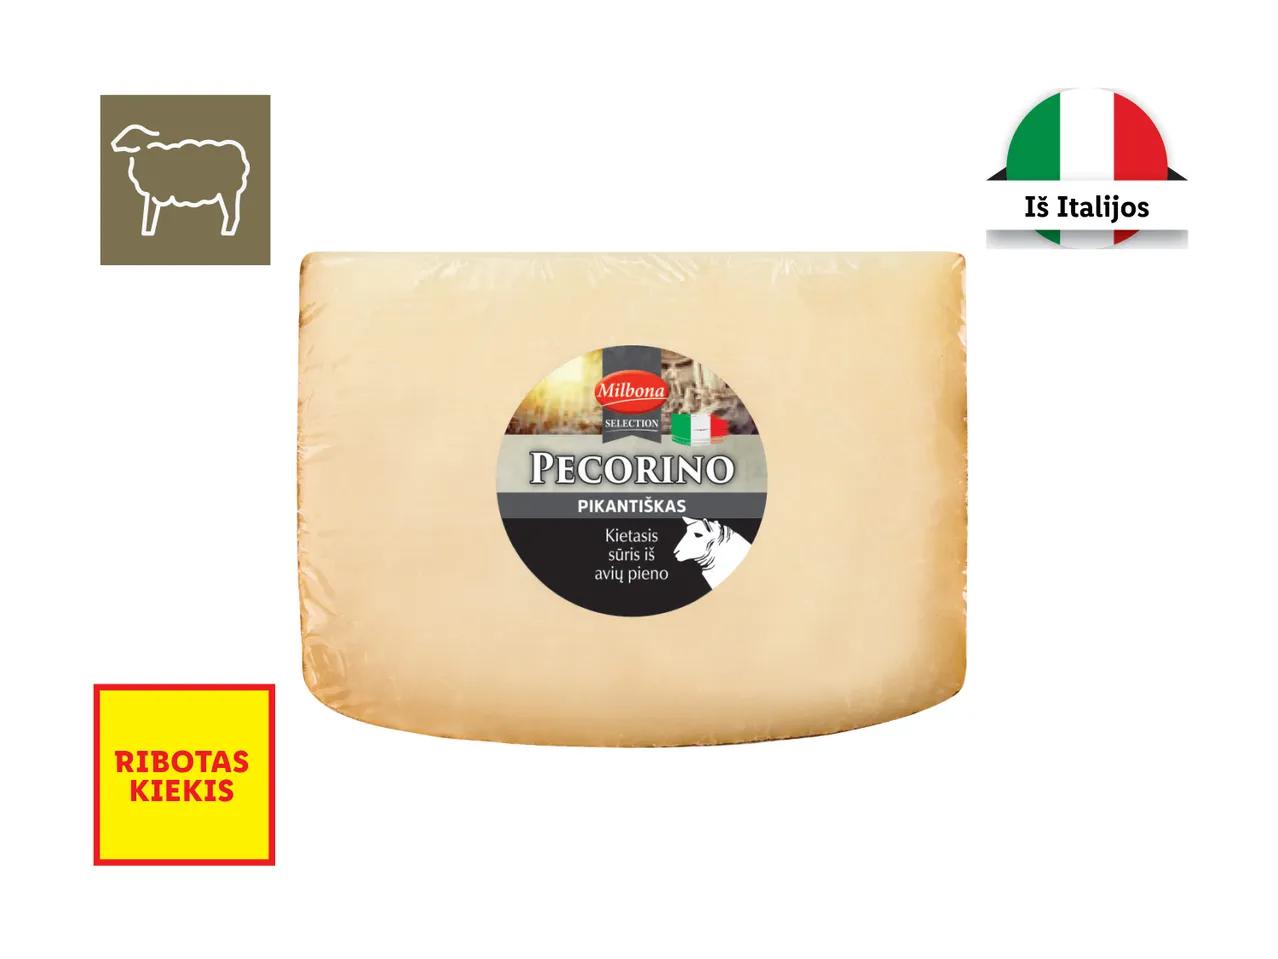 Prekė: Kietasis sūris iš avių pieno „Pecorino“